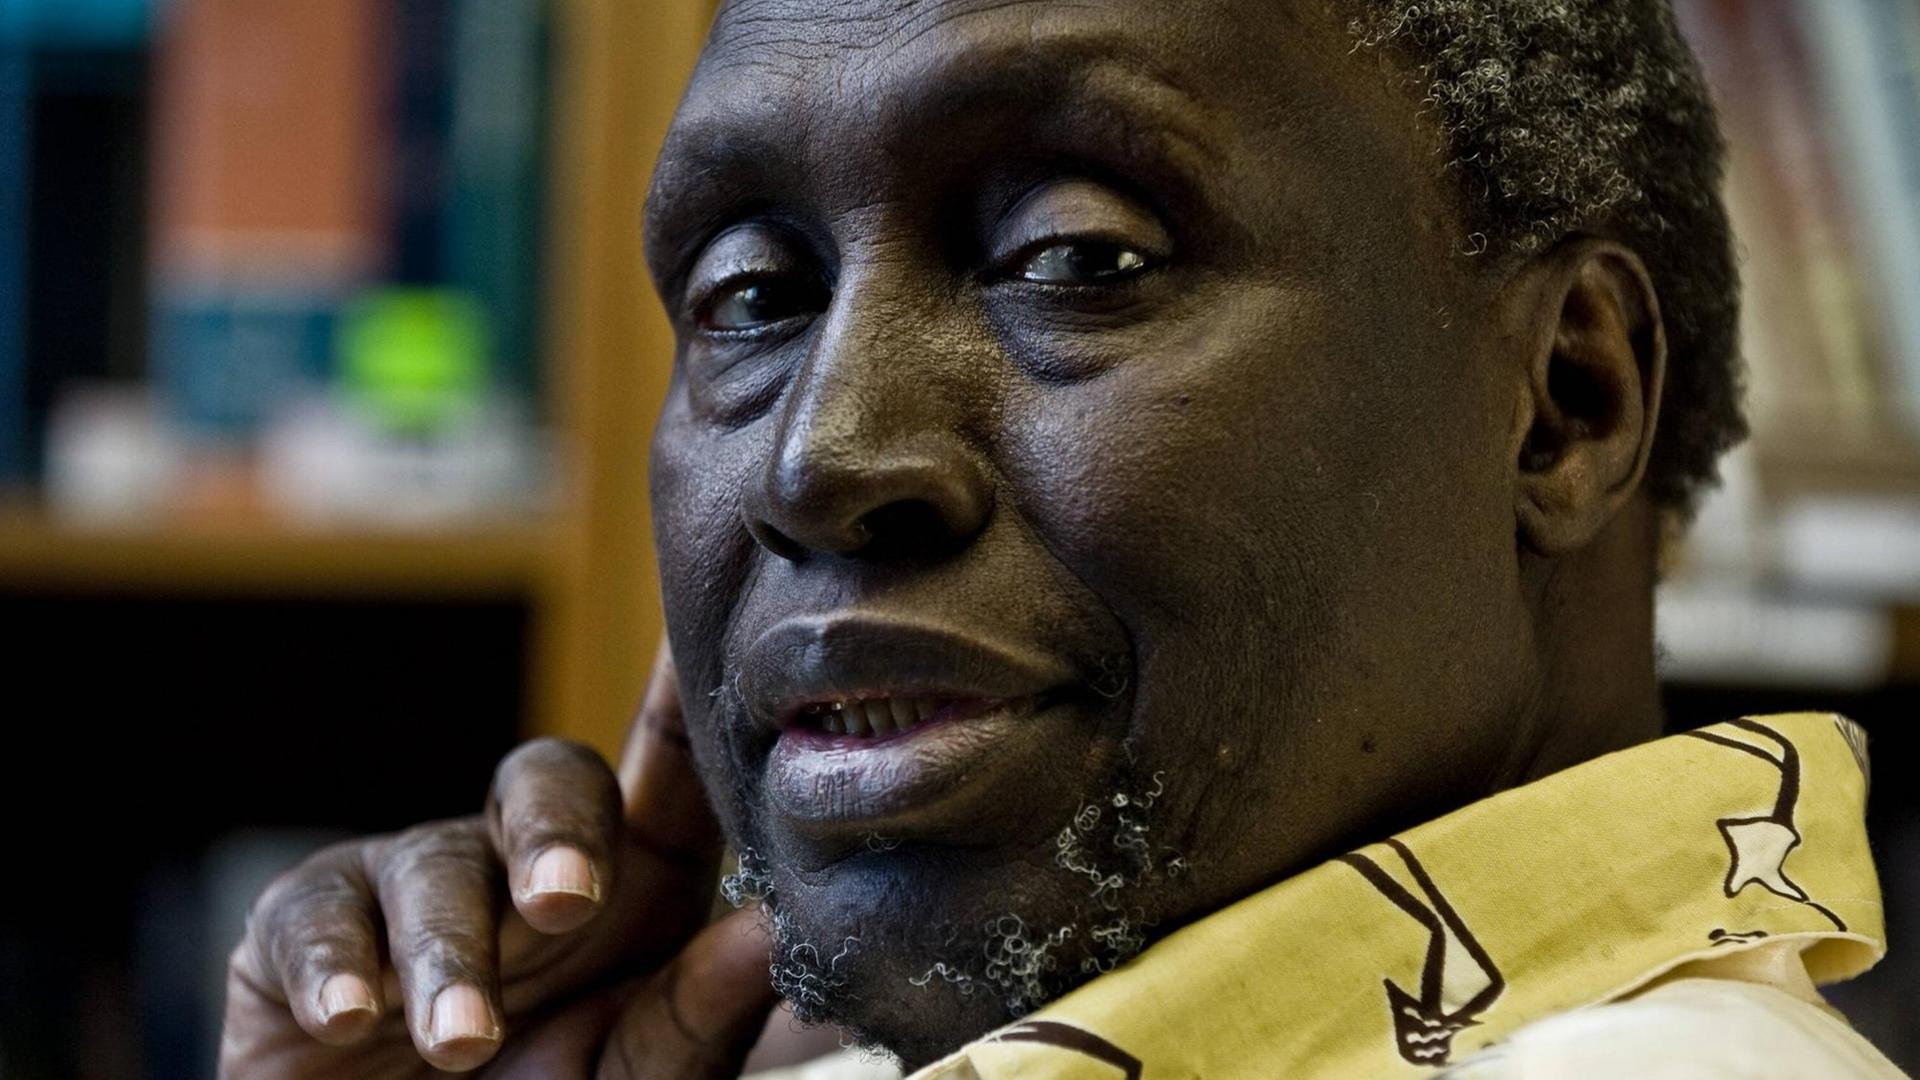 Portrait des kenianischen Schriftstellers Ngugi Wa Thiong o, der nach linke in die Kamera guckt und die rechte Hand mit Daumen und Zeigefinger an die Wange hält.